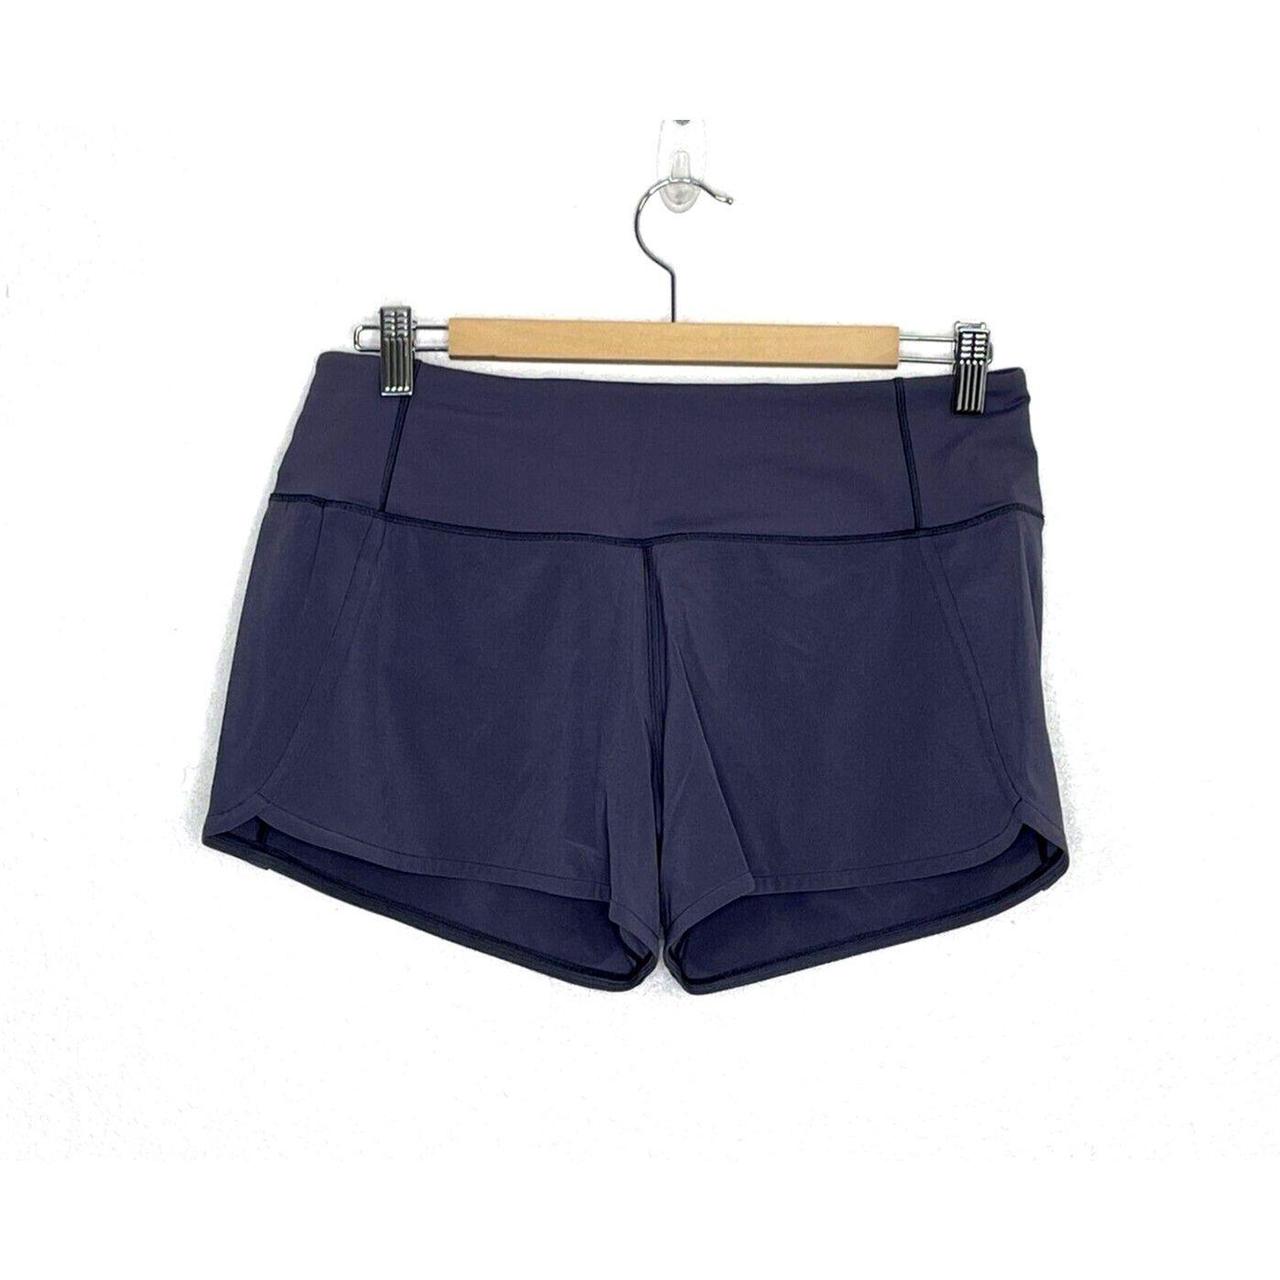 Lululemon Athletica Purple Shorts Size 4